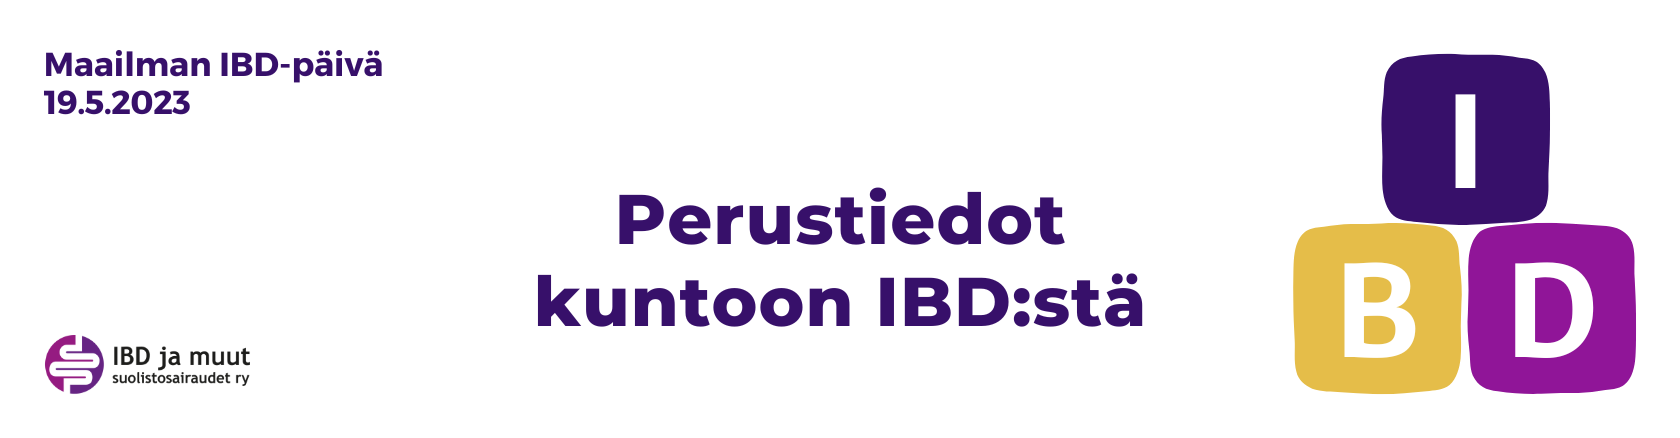 Keskellä lukee: Perustiedot haltuun IBD:stä. Oikeassa reunassa kolme palikkaa, joissa kirjaimet I, B ja D. Vasemmassa reunassa lukee Maailman IBD-päivä 19.5.2023.